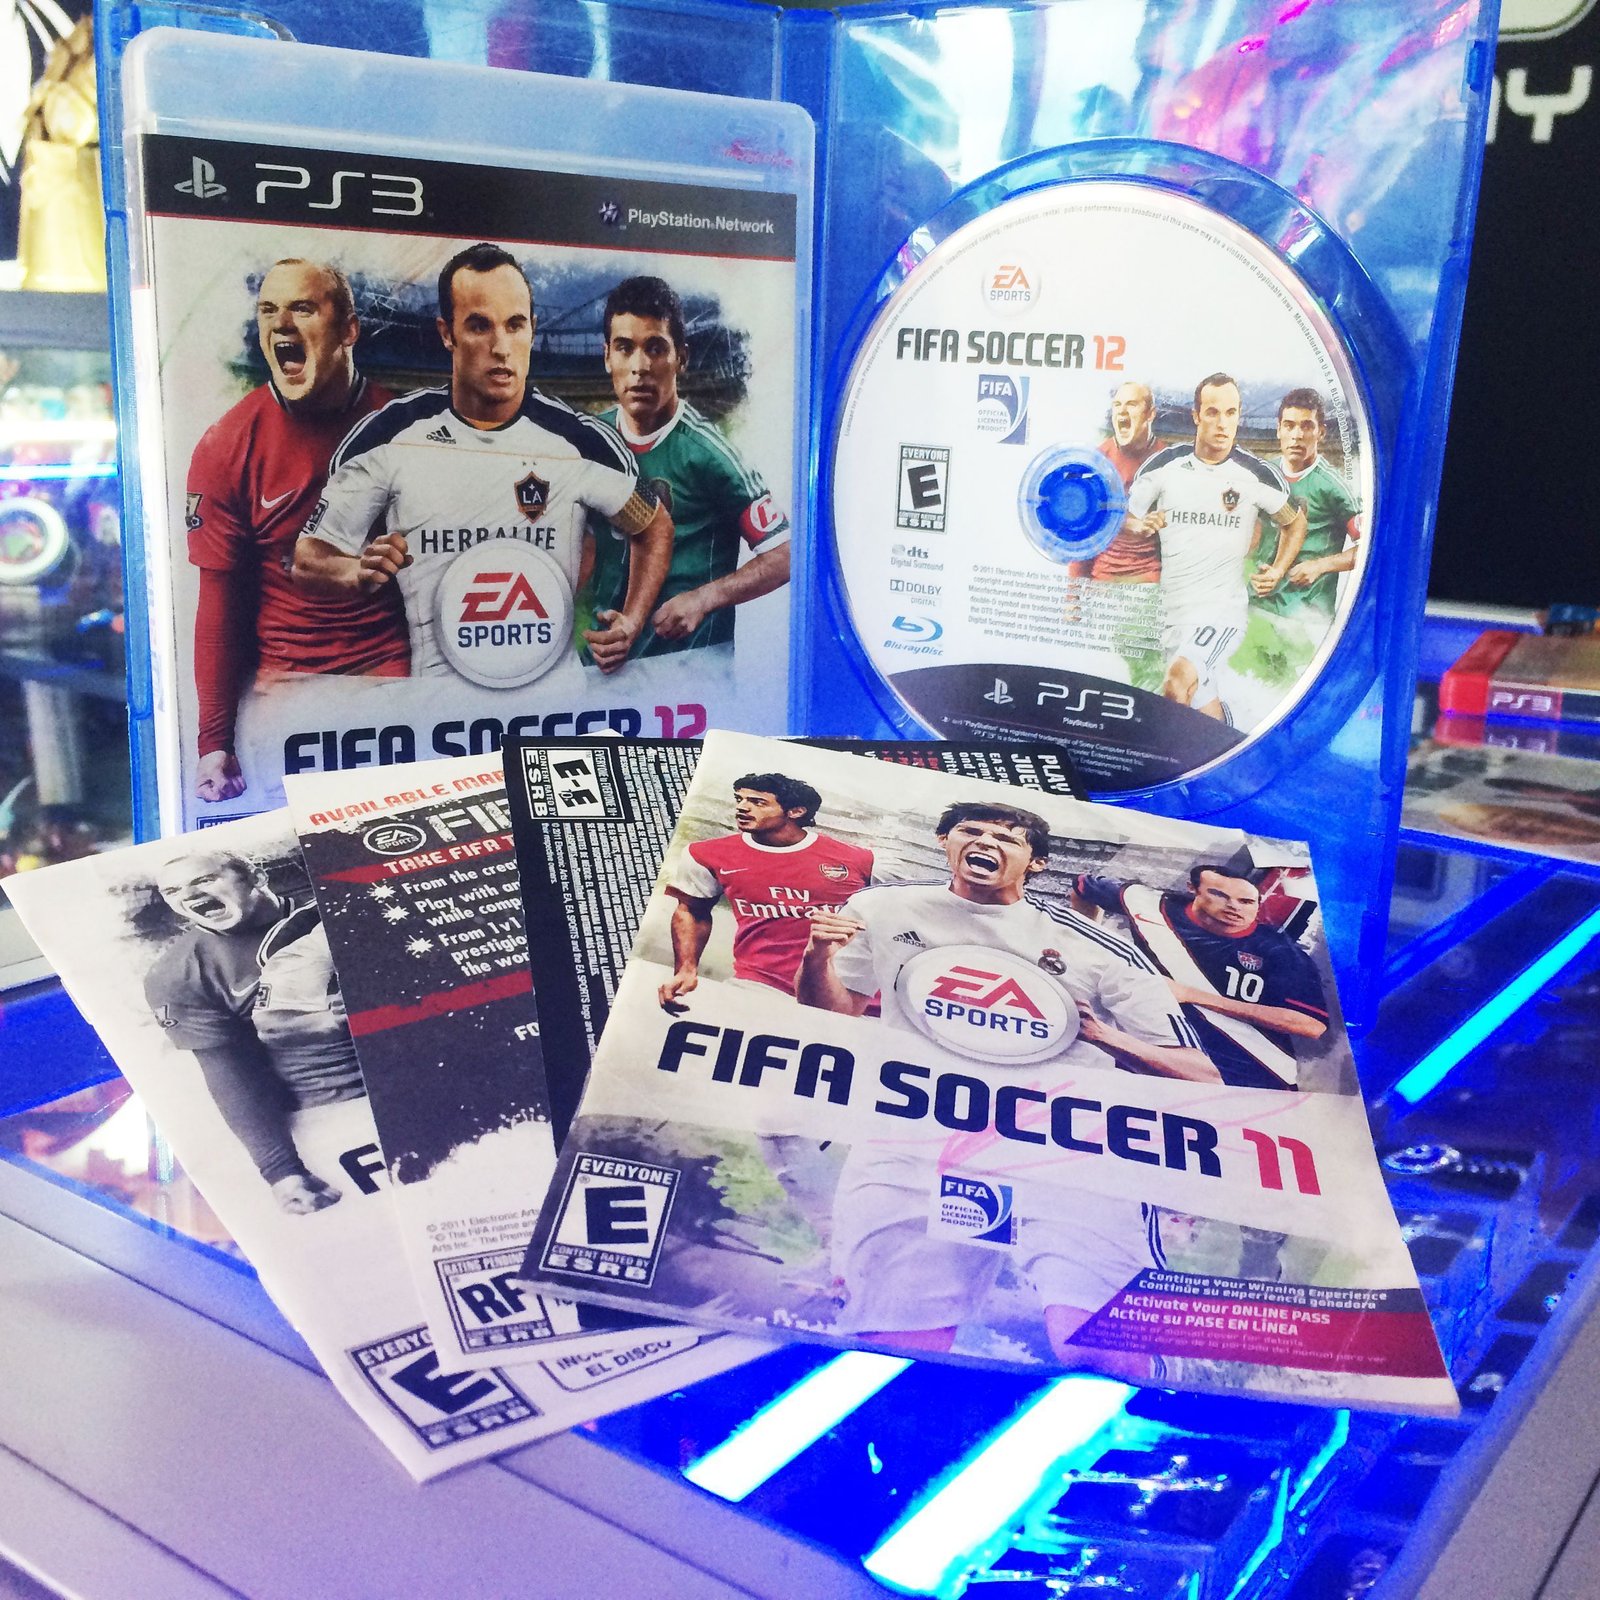 Videojuegos para consola PS3 FIFA Soccer 11 Ecuador Comprar Venden, Bonita Apariencia ideal para los fans, practica, Hermoso material de papel Color como en la imagen Estado usado